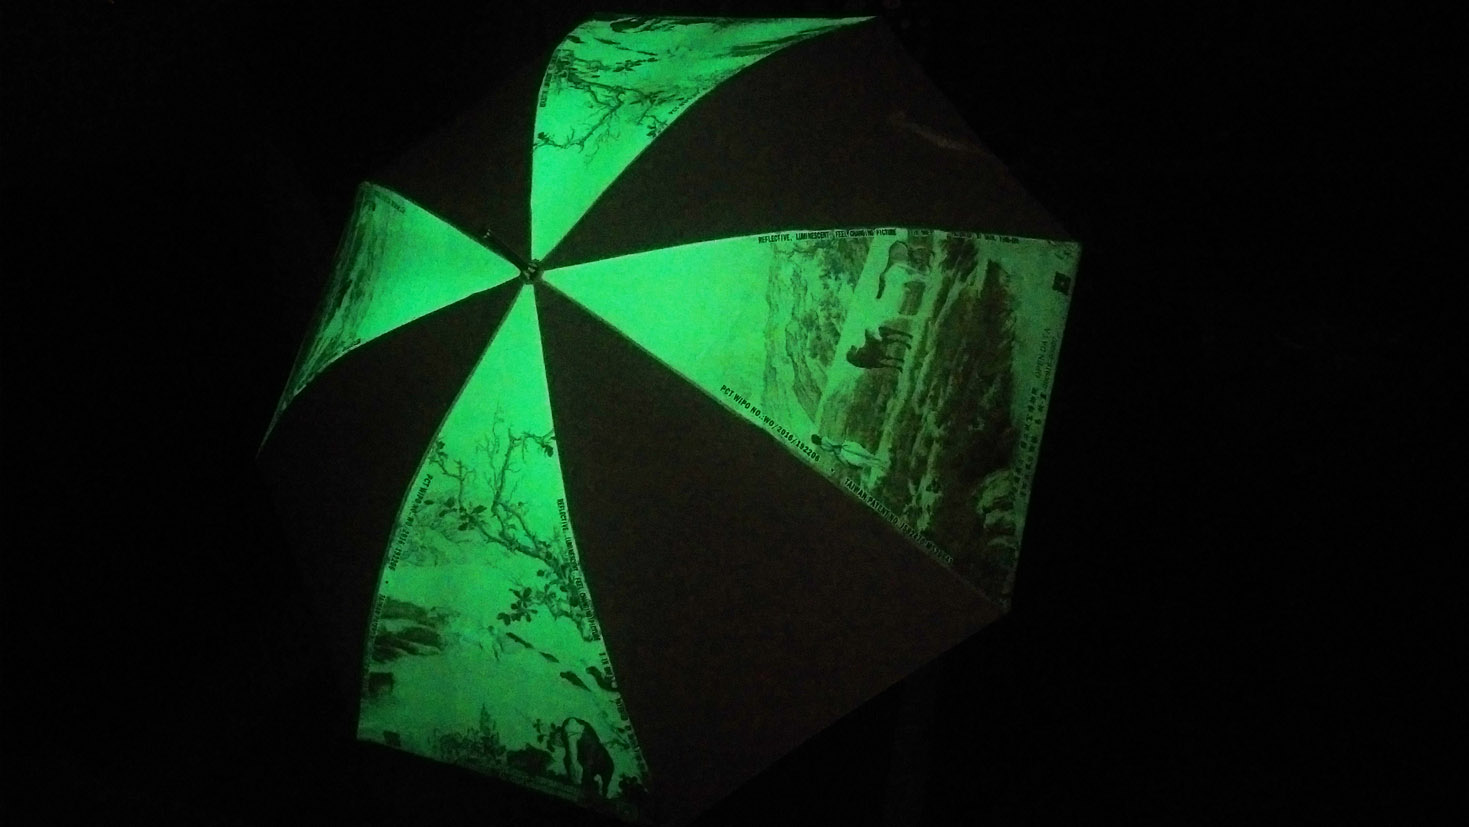 Multi-colored Reflective and Luminescent Umbrella